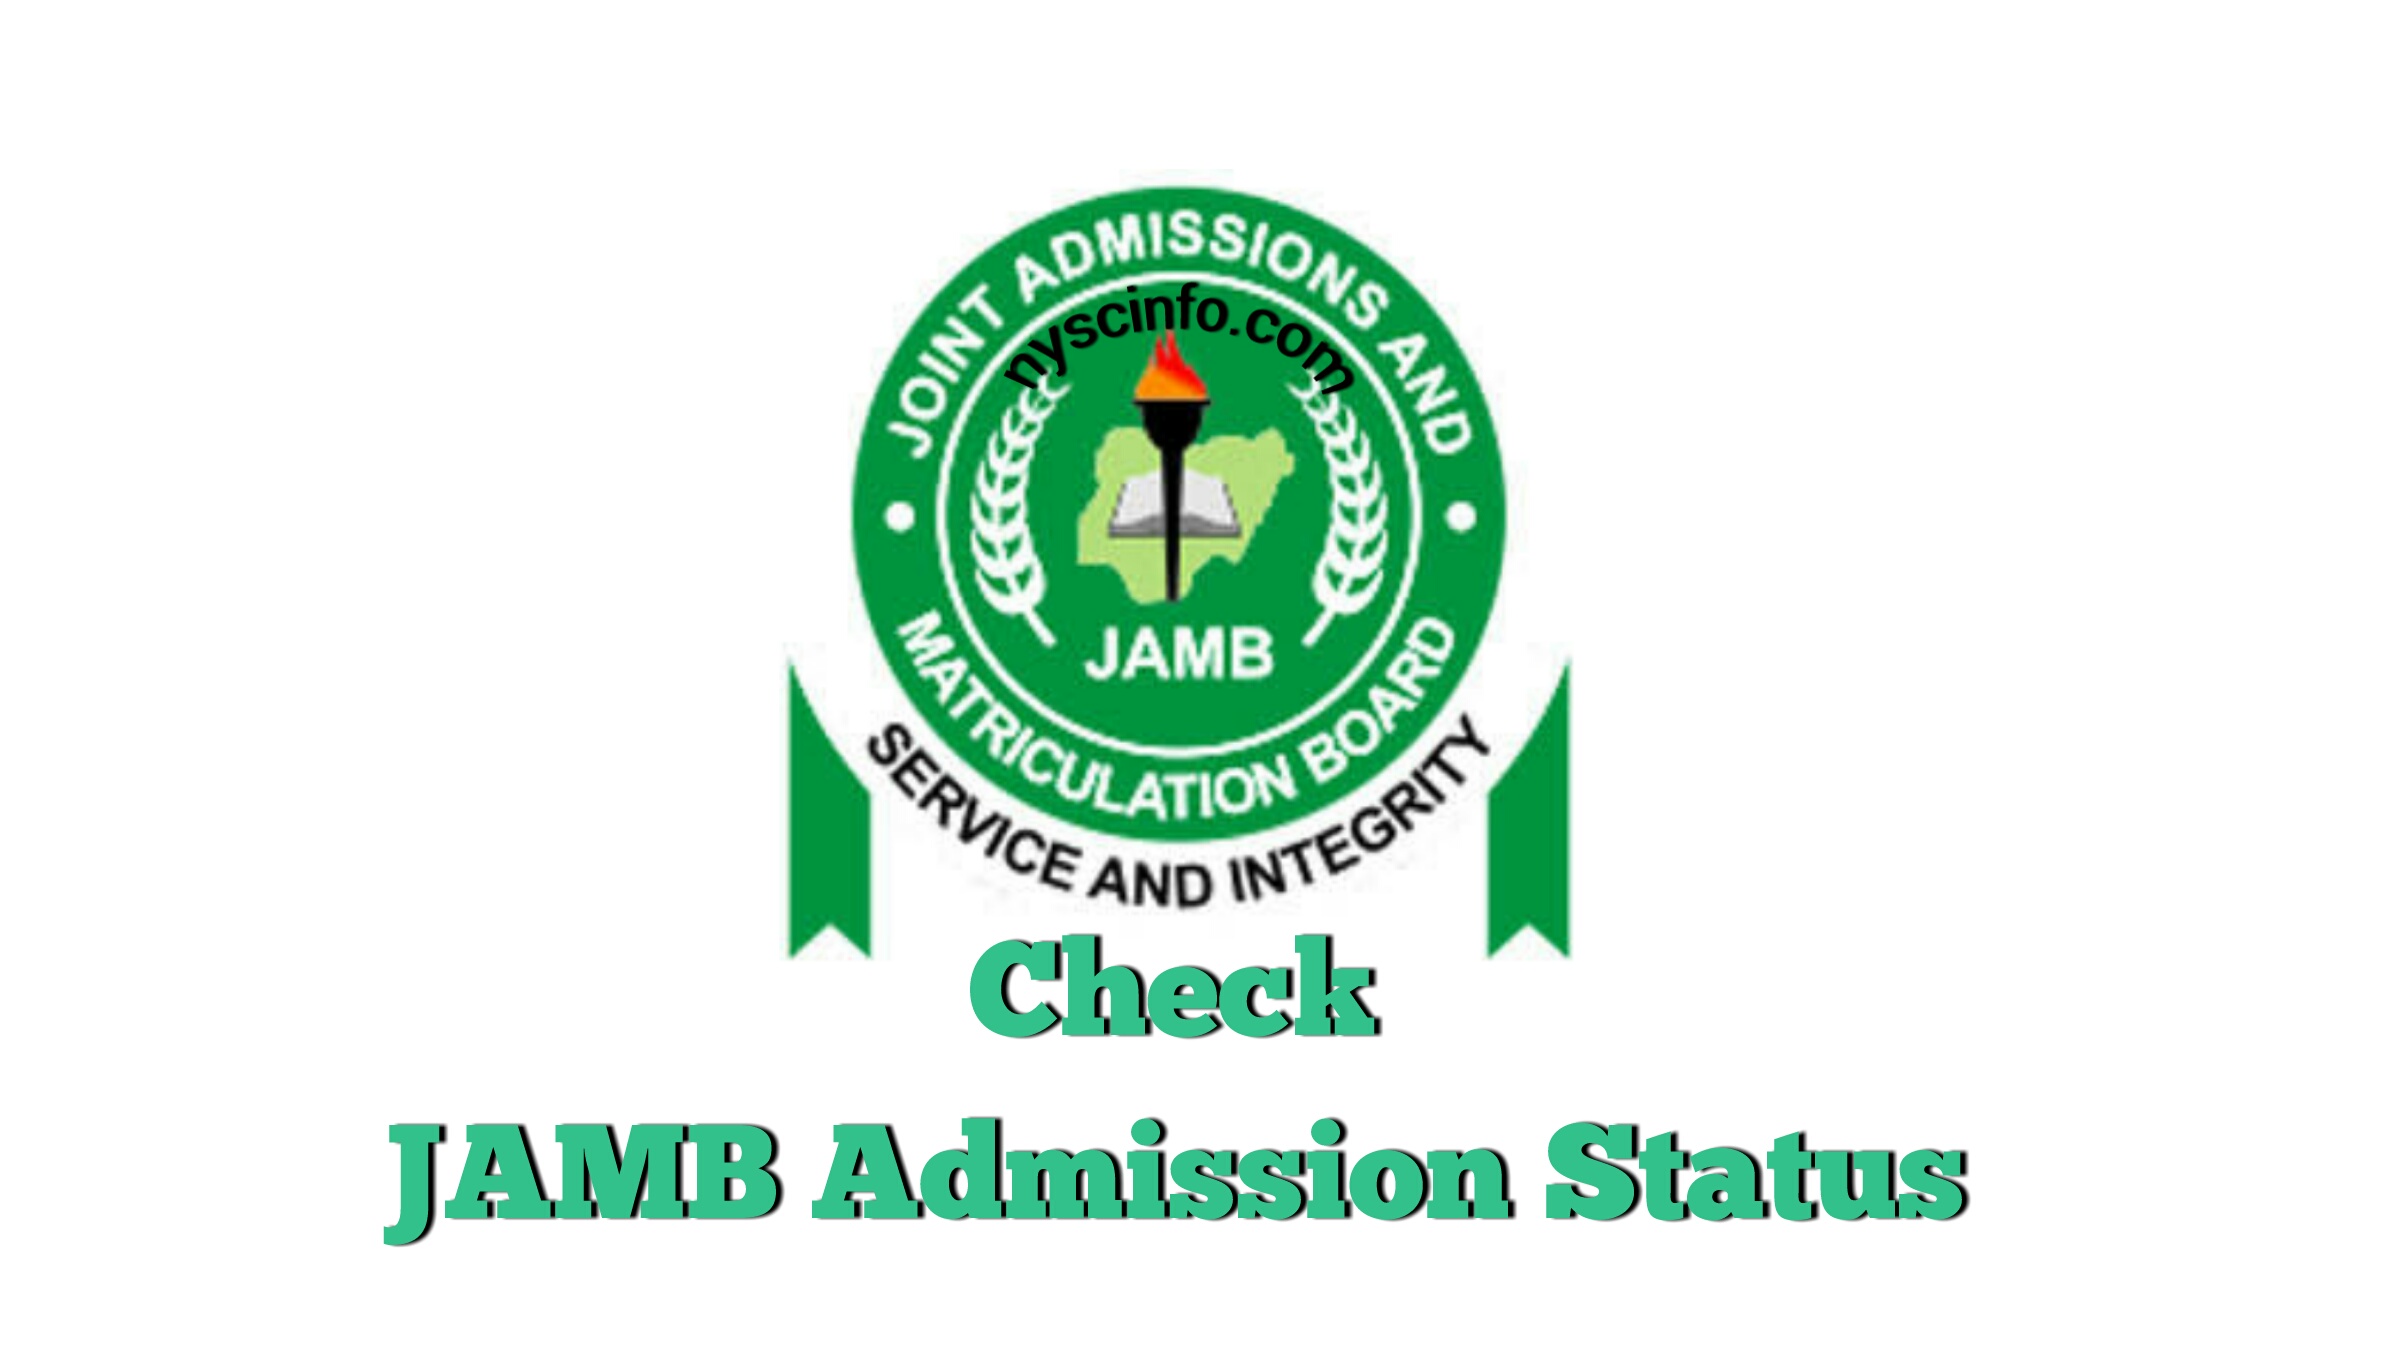 Jamb admission status